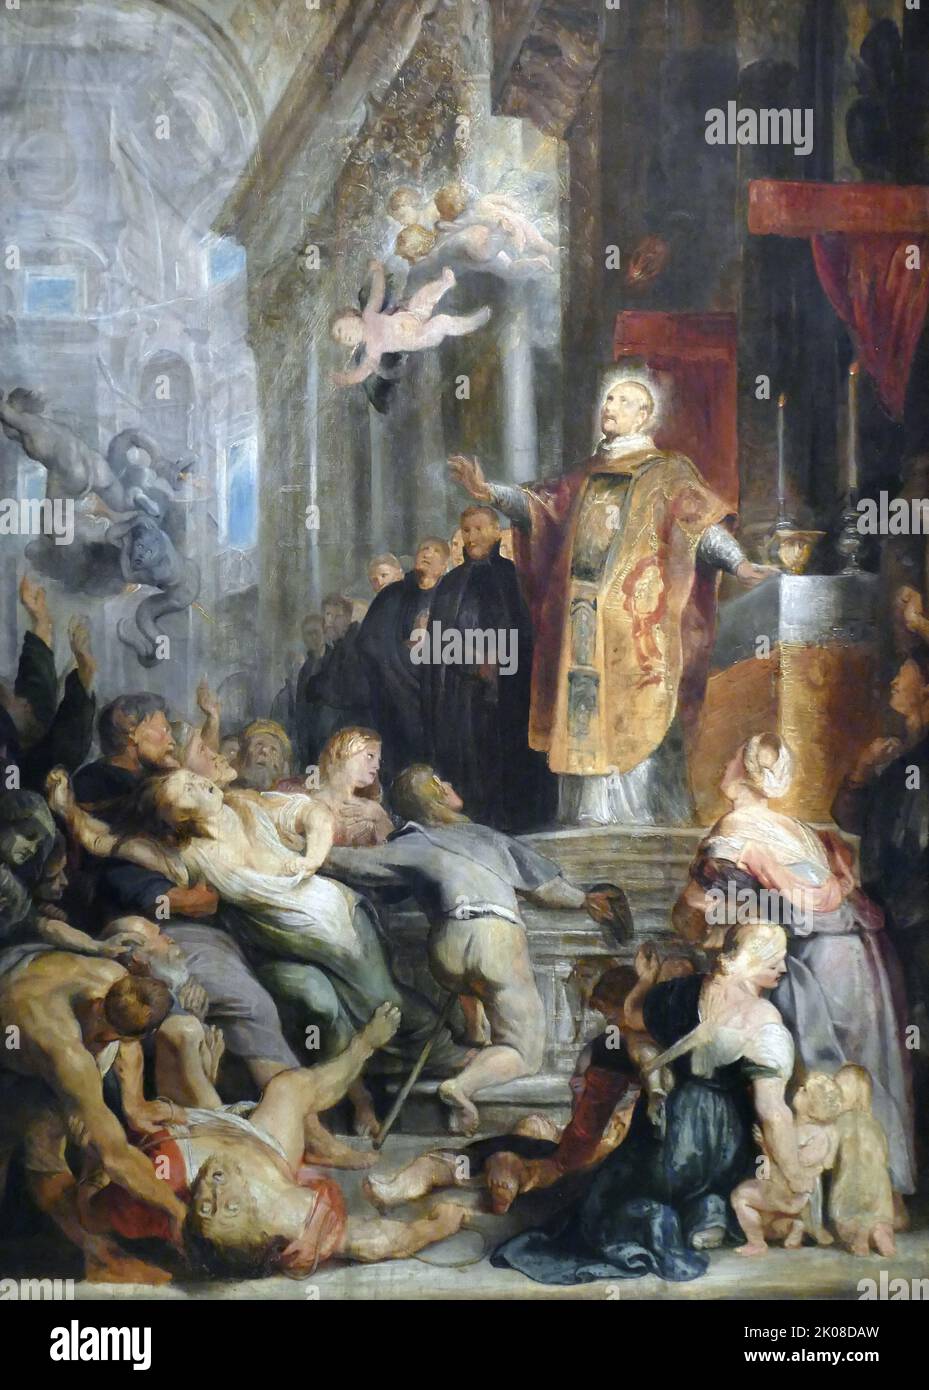 Los Milagros de San Ignacio de Loyola, modello, c1615-1616, por Sir Peter Paul Rubens (28 de junio de 1577 - 30 de mayo de 1640) fue un artista y diplomático flamenco del Ducado de Brabante, en el sur de los Países Bajos Foto de stock